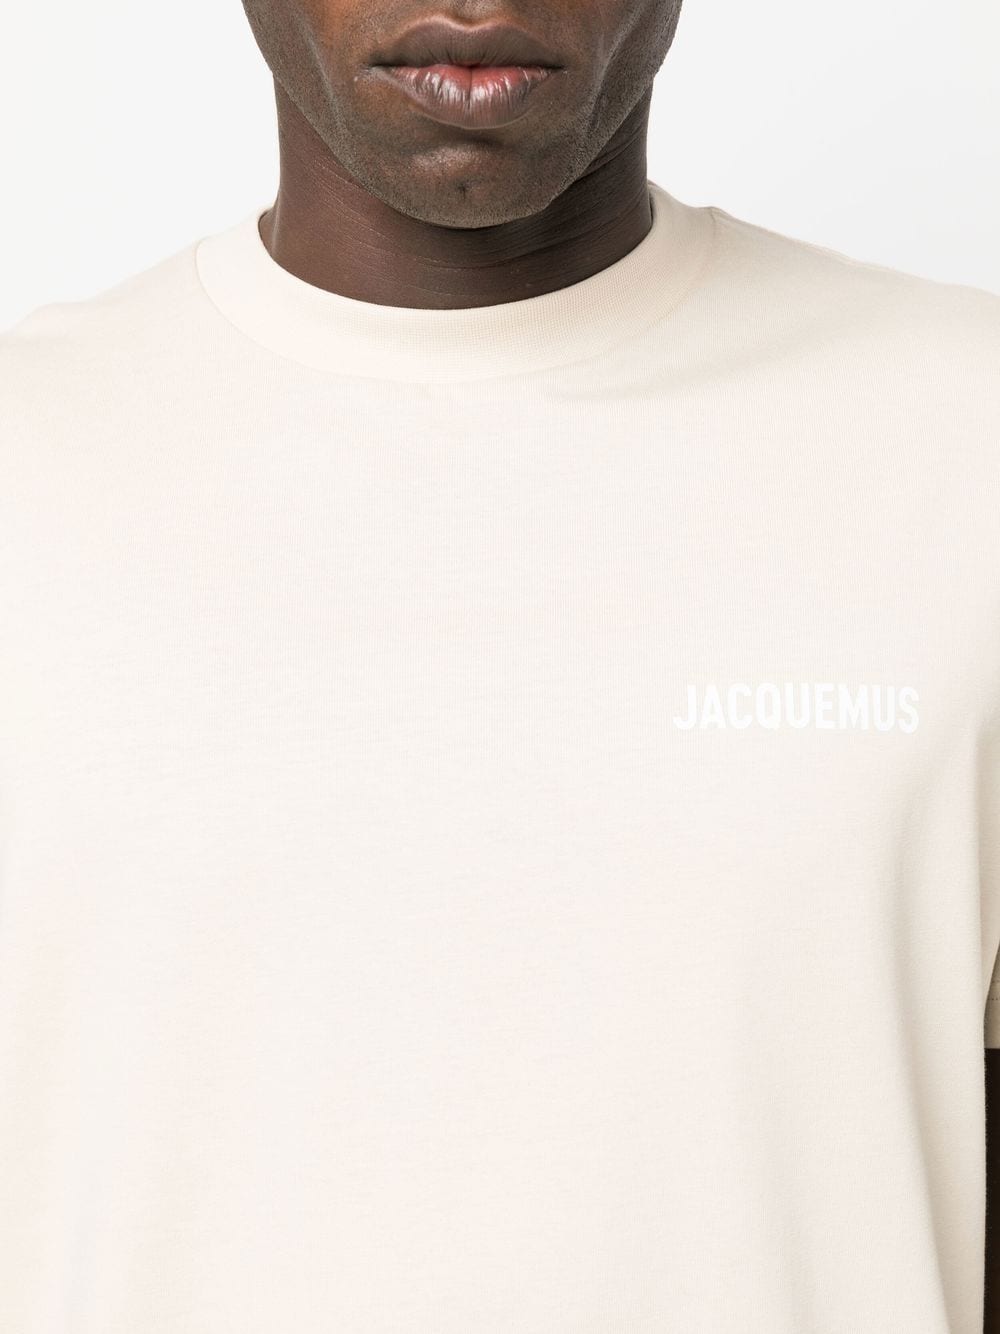 Le Tshirt Jacquemus